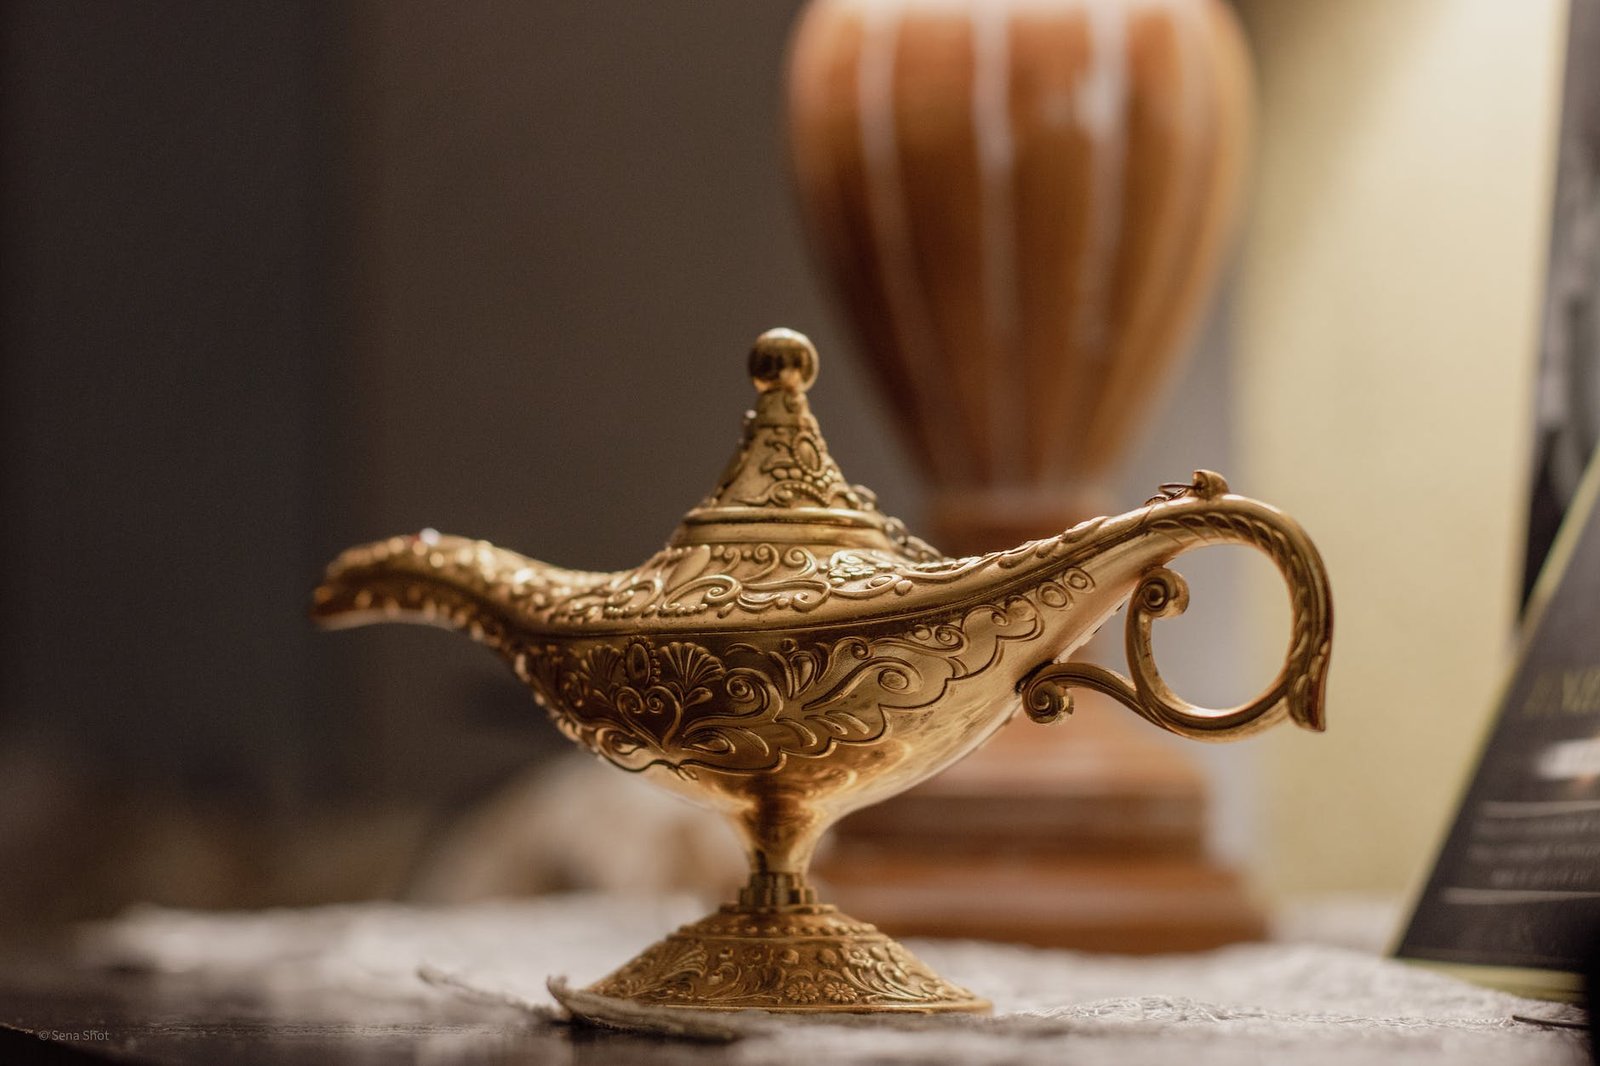 a gold genie lamp